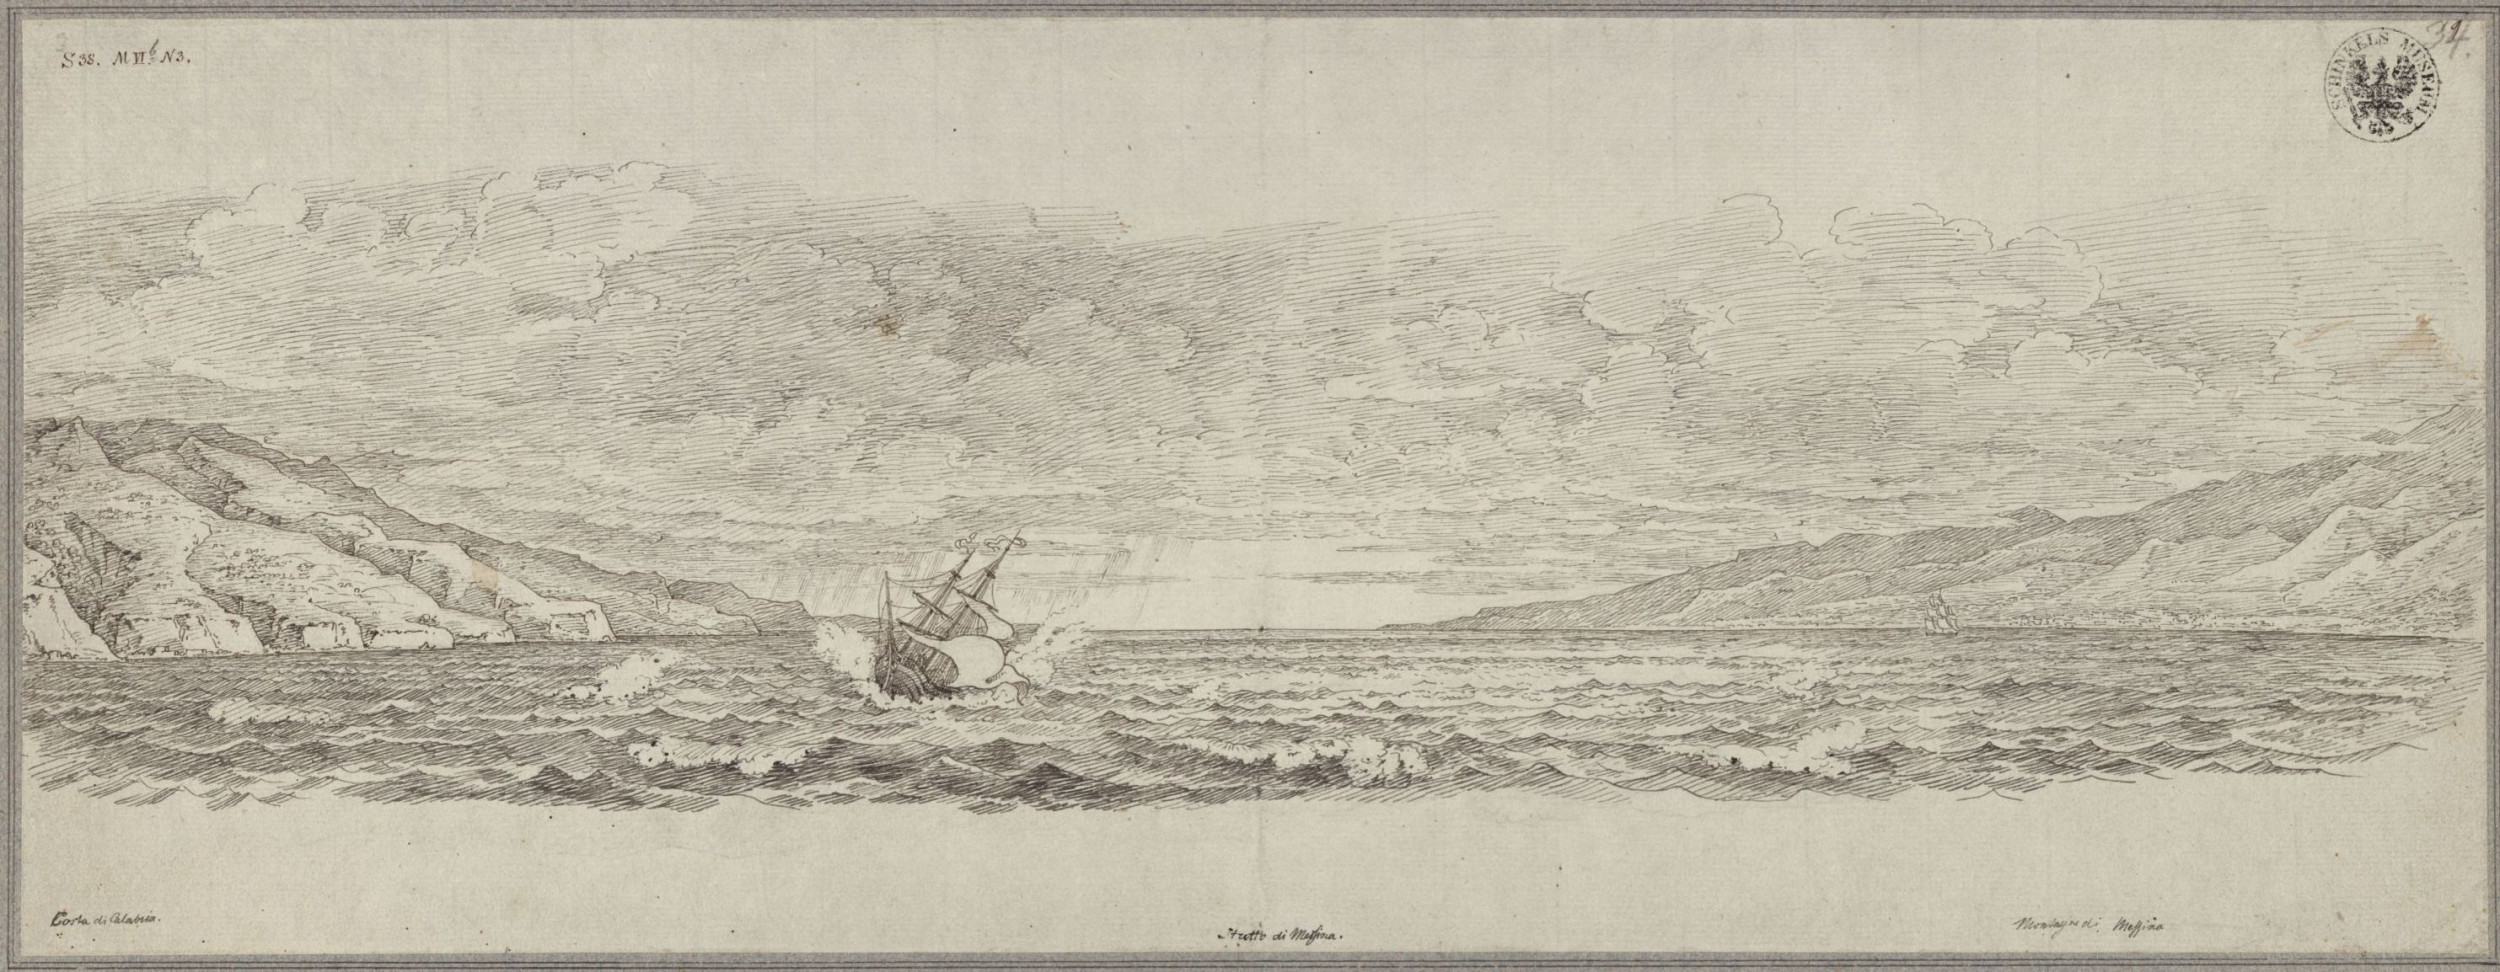 Meerenge bei Messina, Scylla und Charybdis. Zeichnung von Karl Friedrich Schinkel